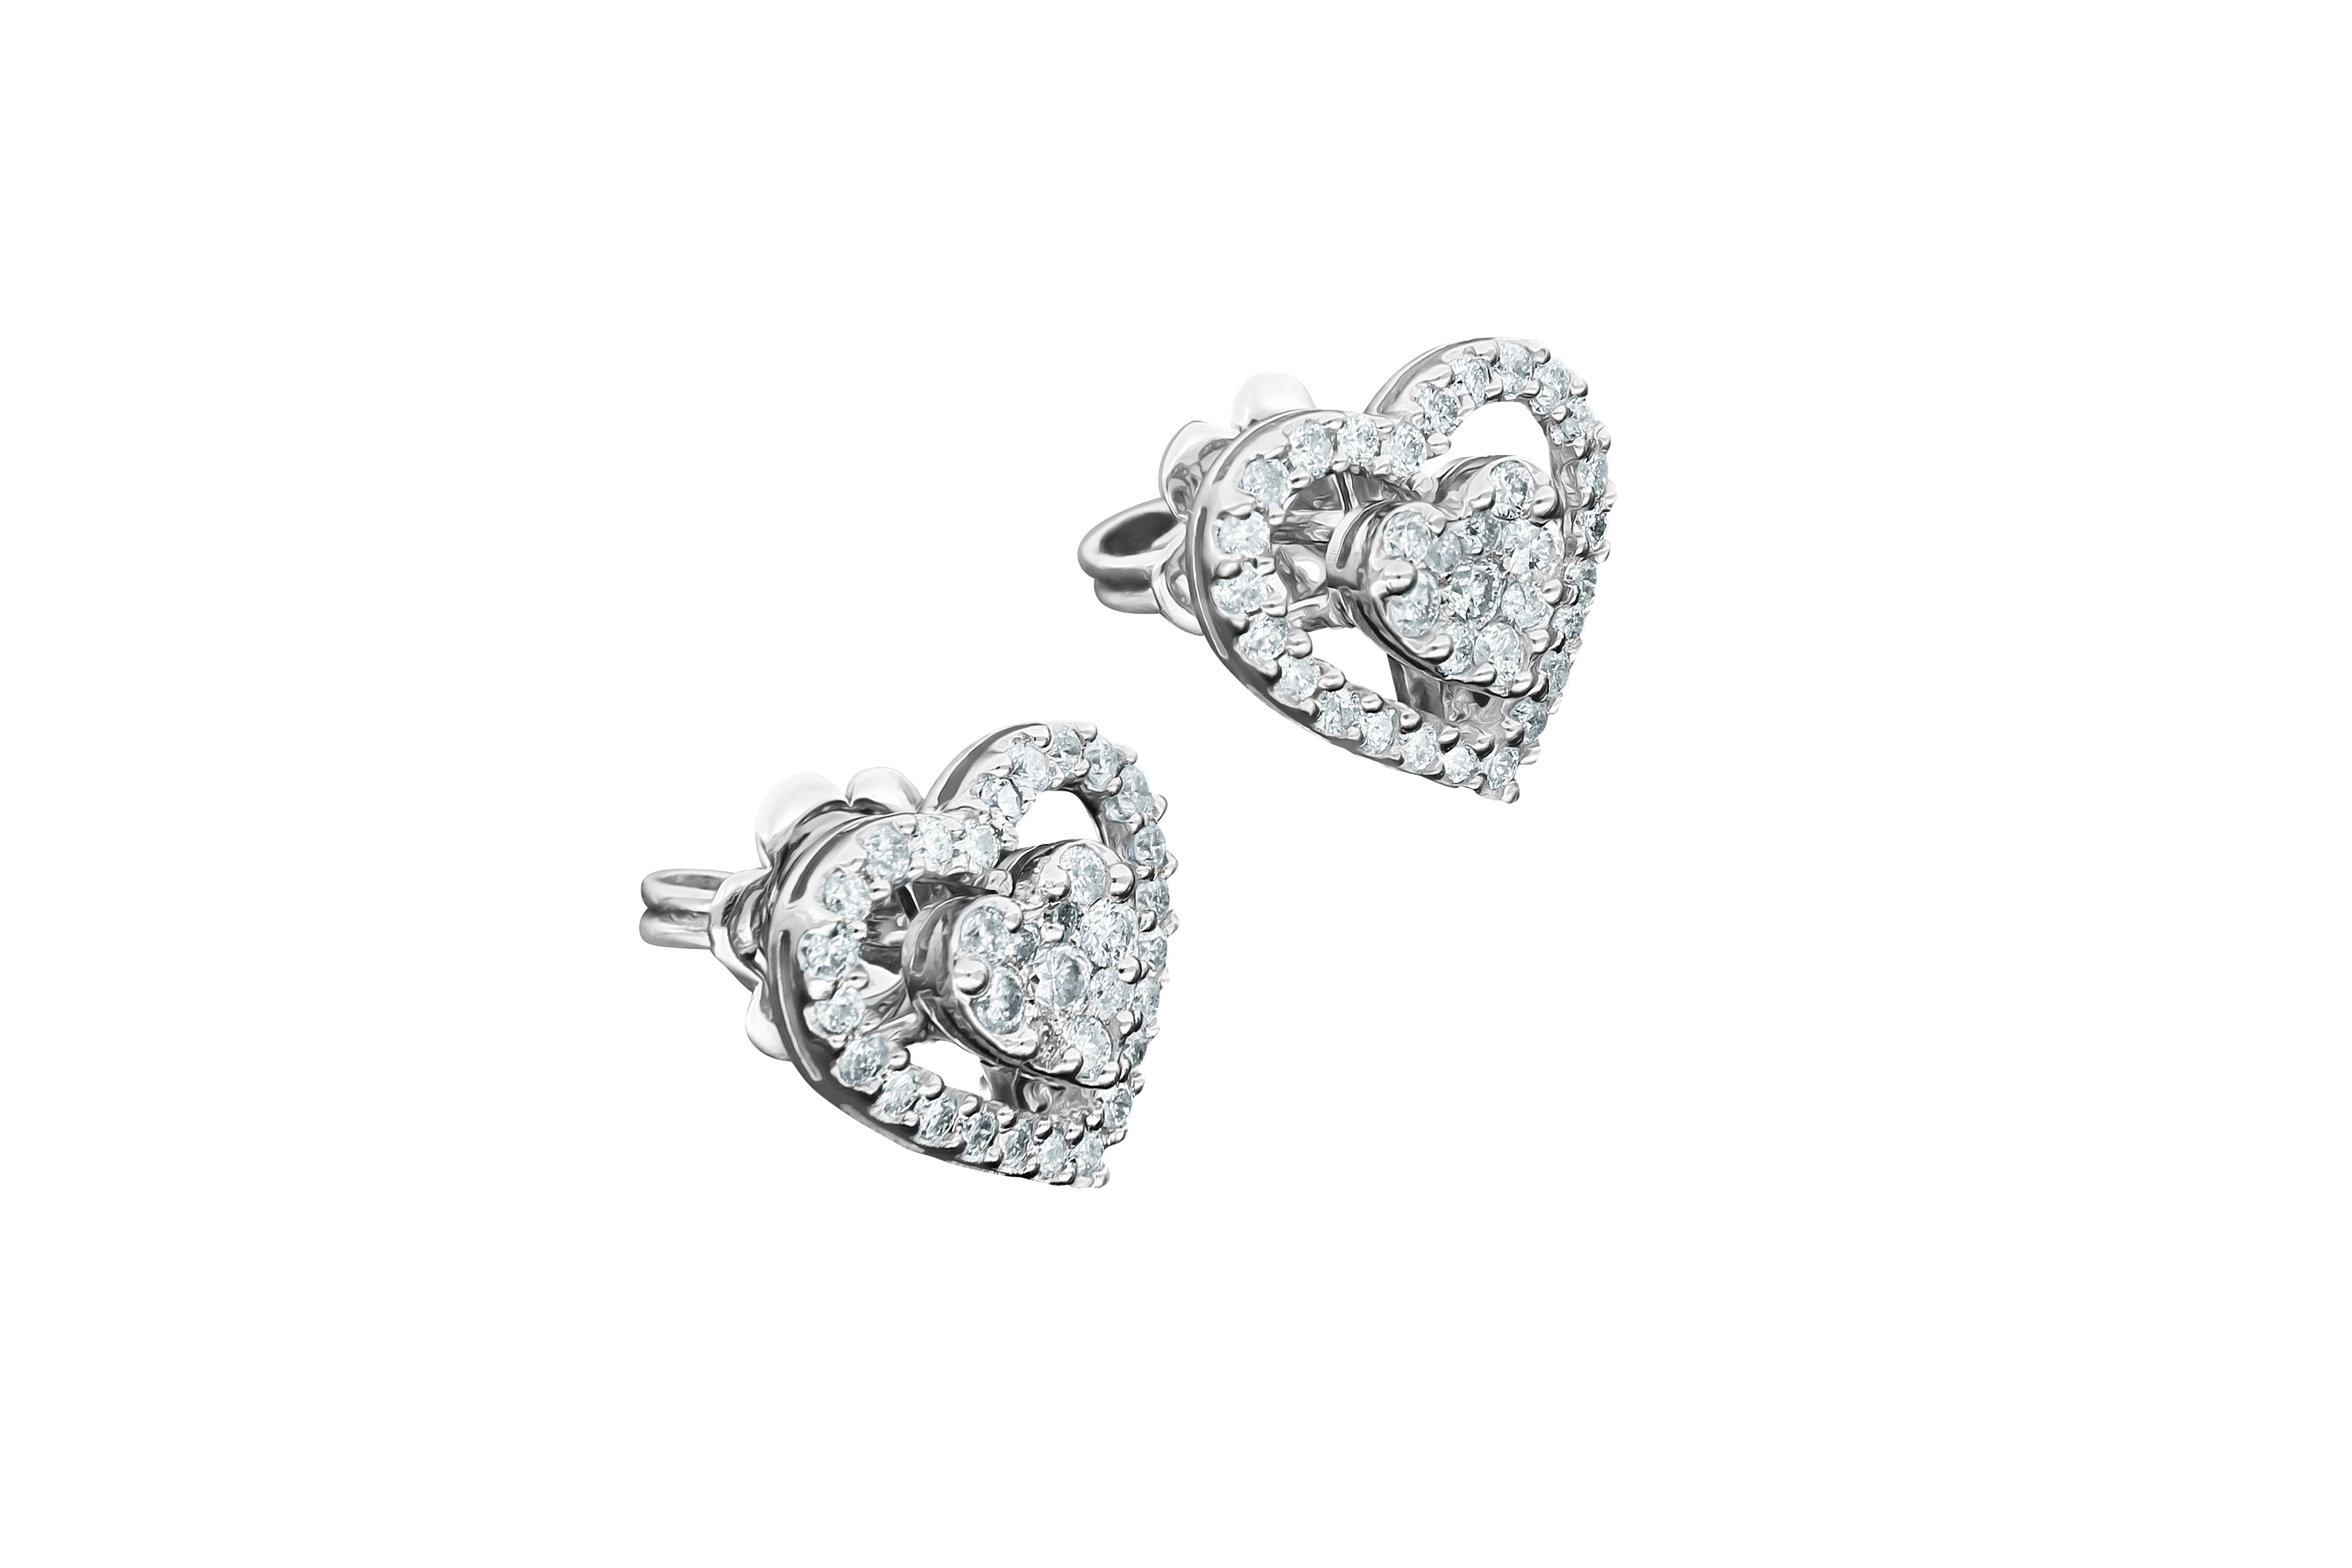  Boucle d'oreille Amwaj en or blanc 18 carats avec des diamants, élégante et romantique. Pour un look qui incarne l'amour, ces boucles d'oreilles en diamant de forme ronde présentent chacune une forme de cœur symbolique entourée d'un halo de